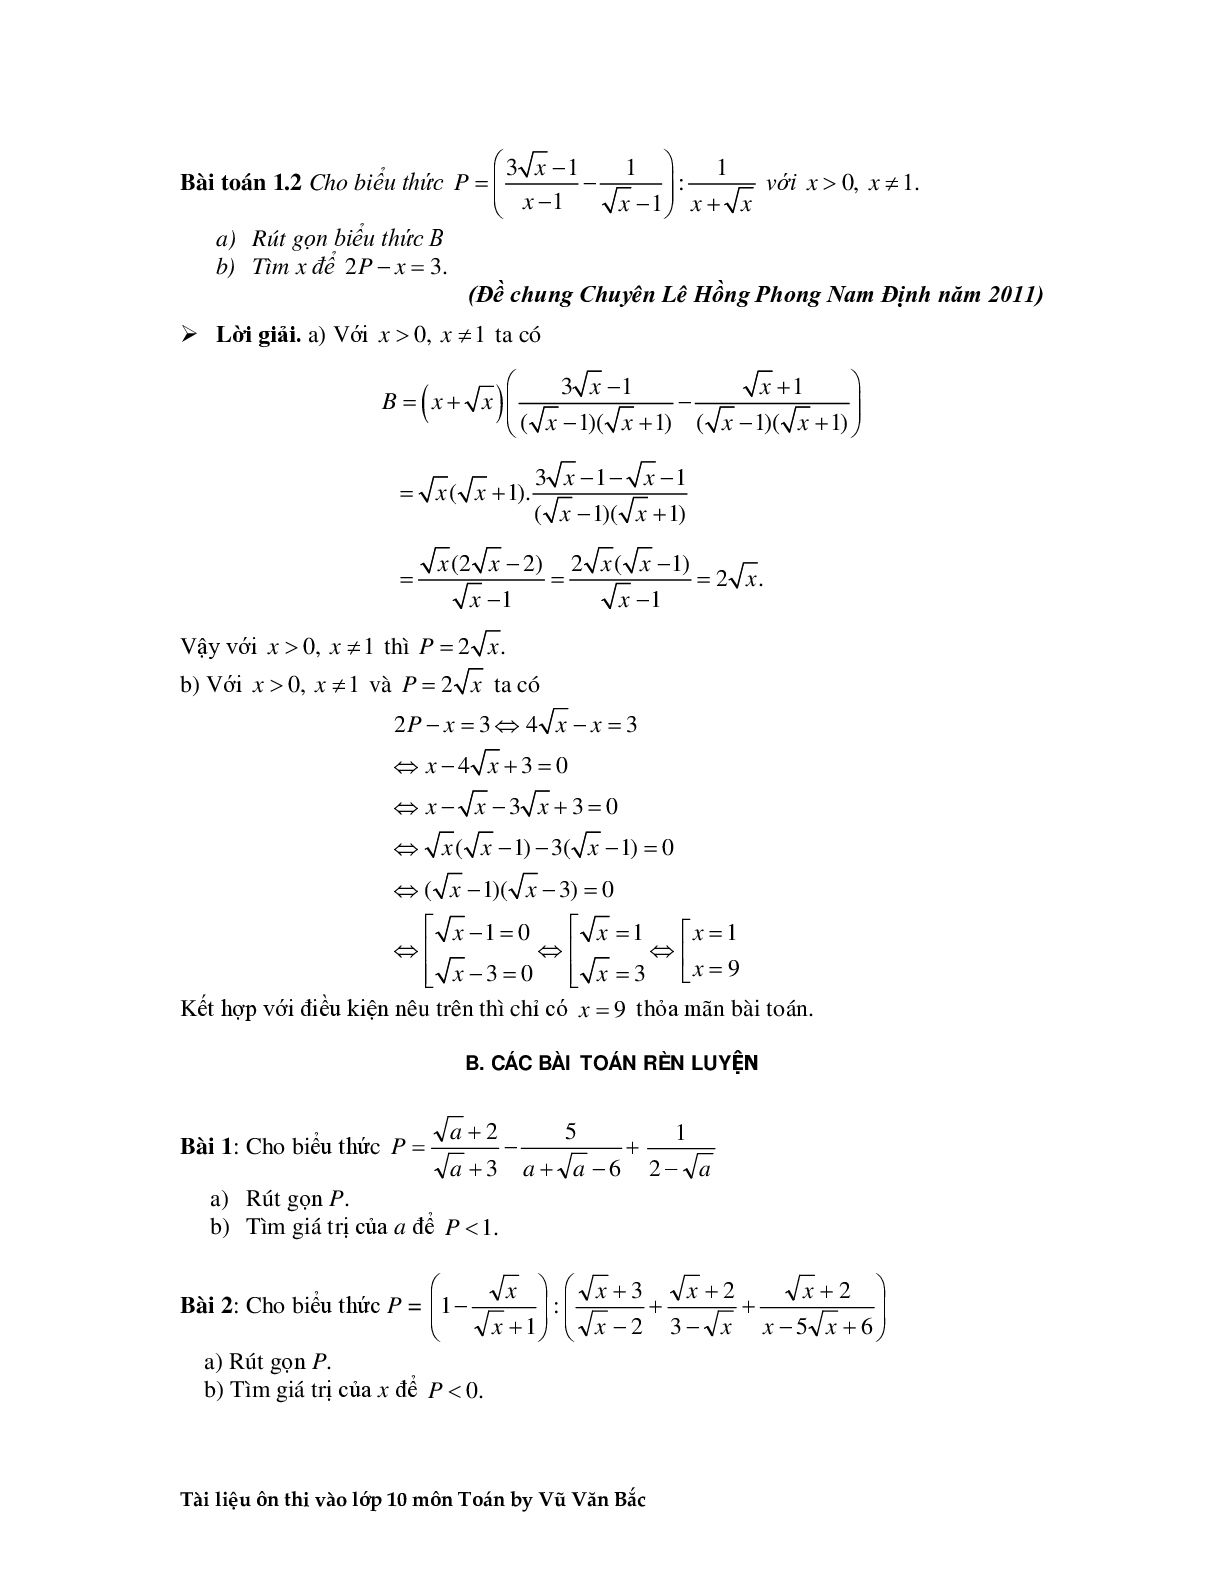 Tài liệu ôn thi vào lớp 10 môn toán (trang 3)